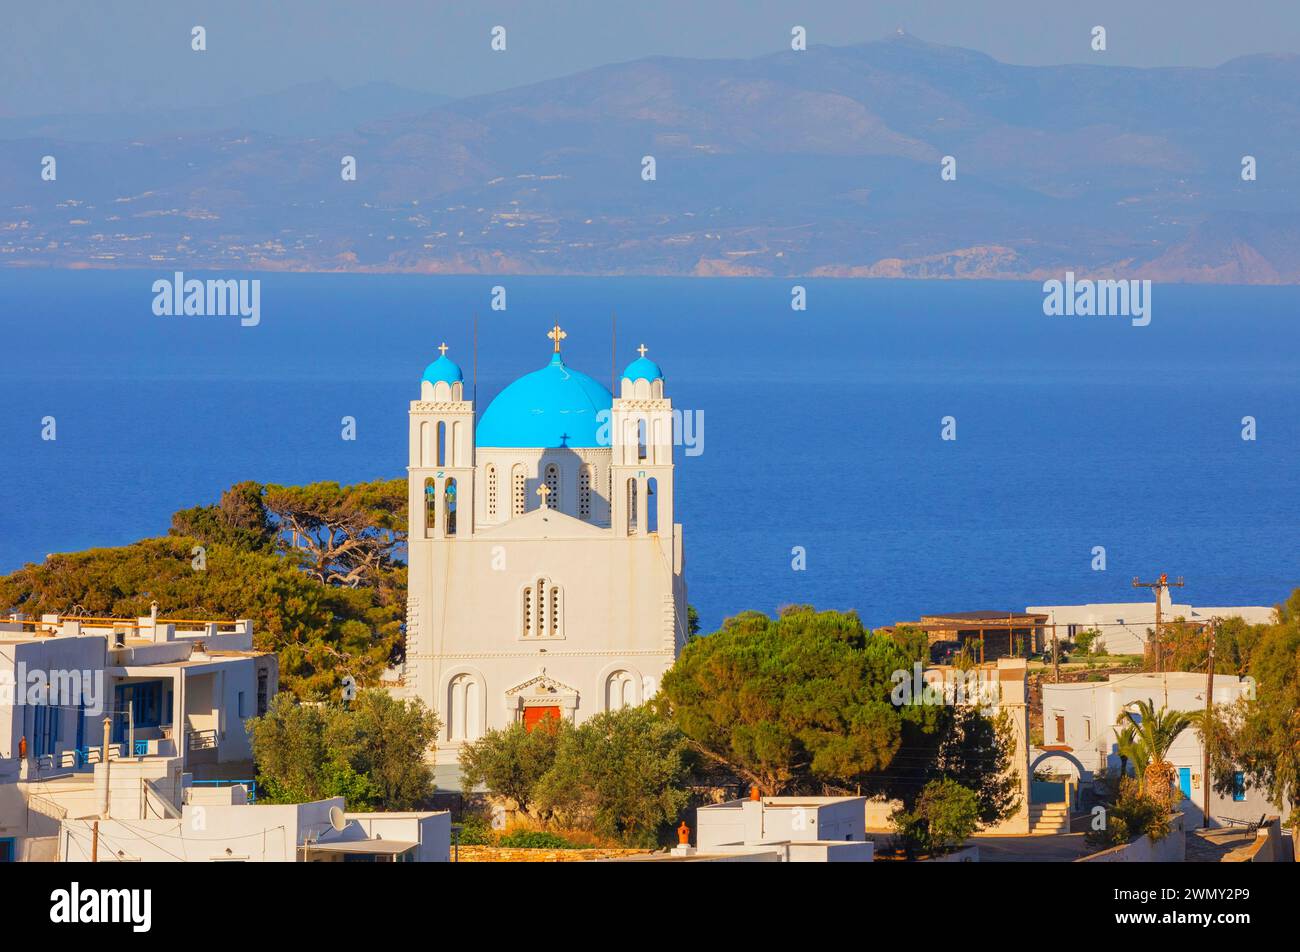 Griechenland, Dodekanesische Inseln, Sifnos Insel, Blick auf die blau gewölbte orthodoxe Kirche im Dorf Kato Petali, Apollonia Stockfoto